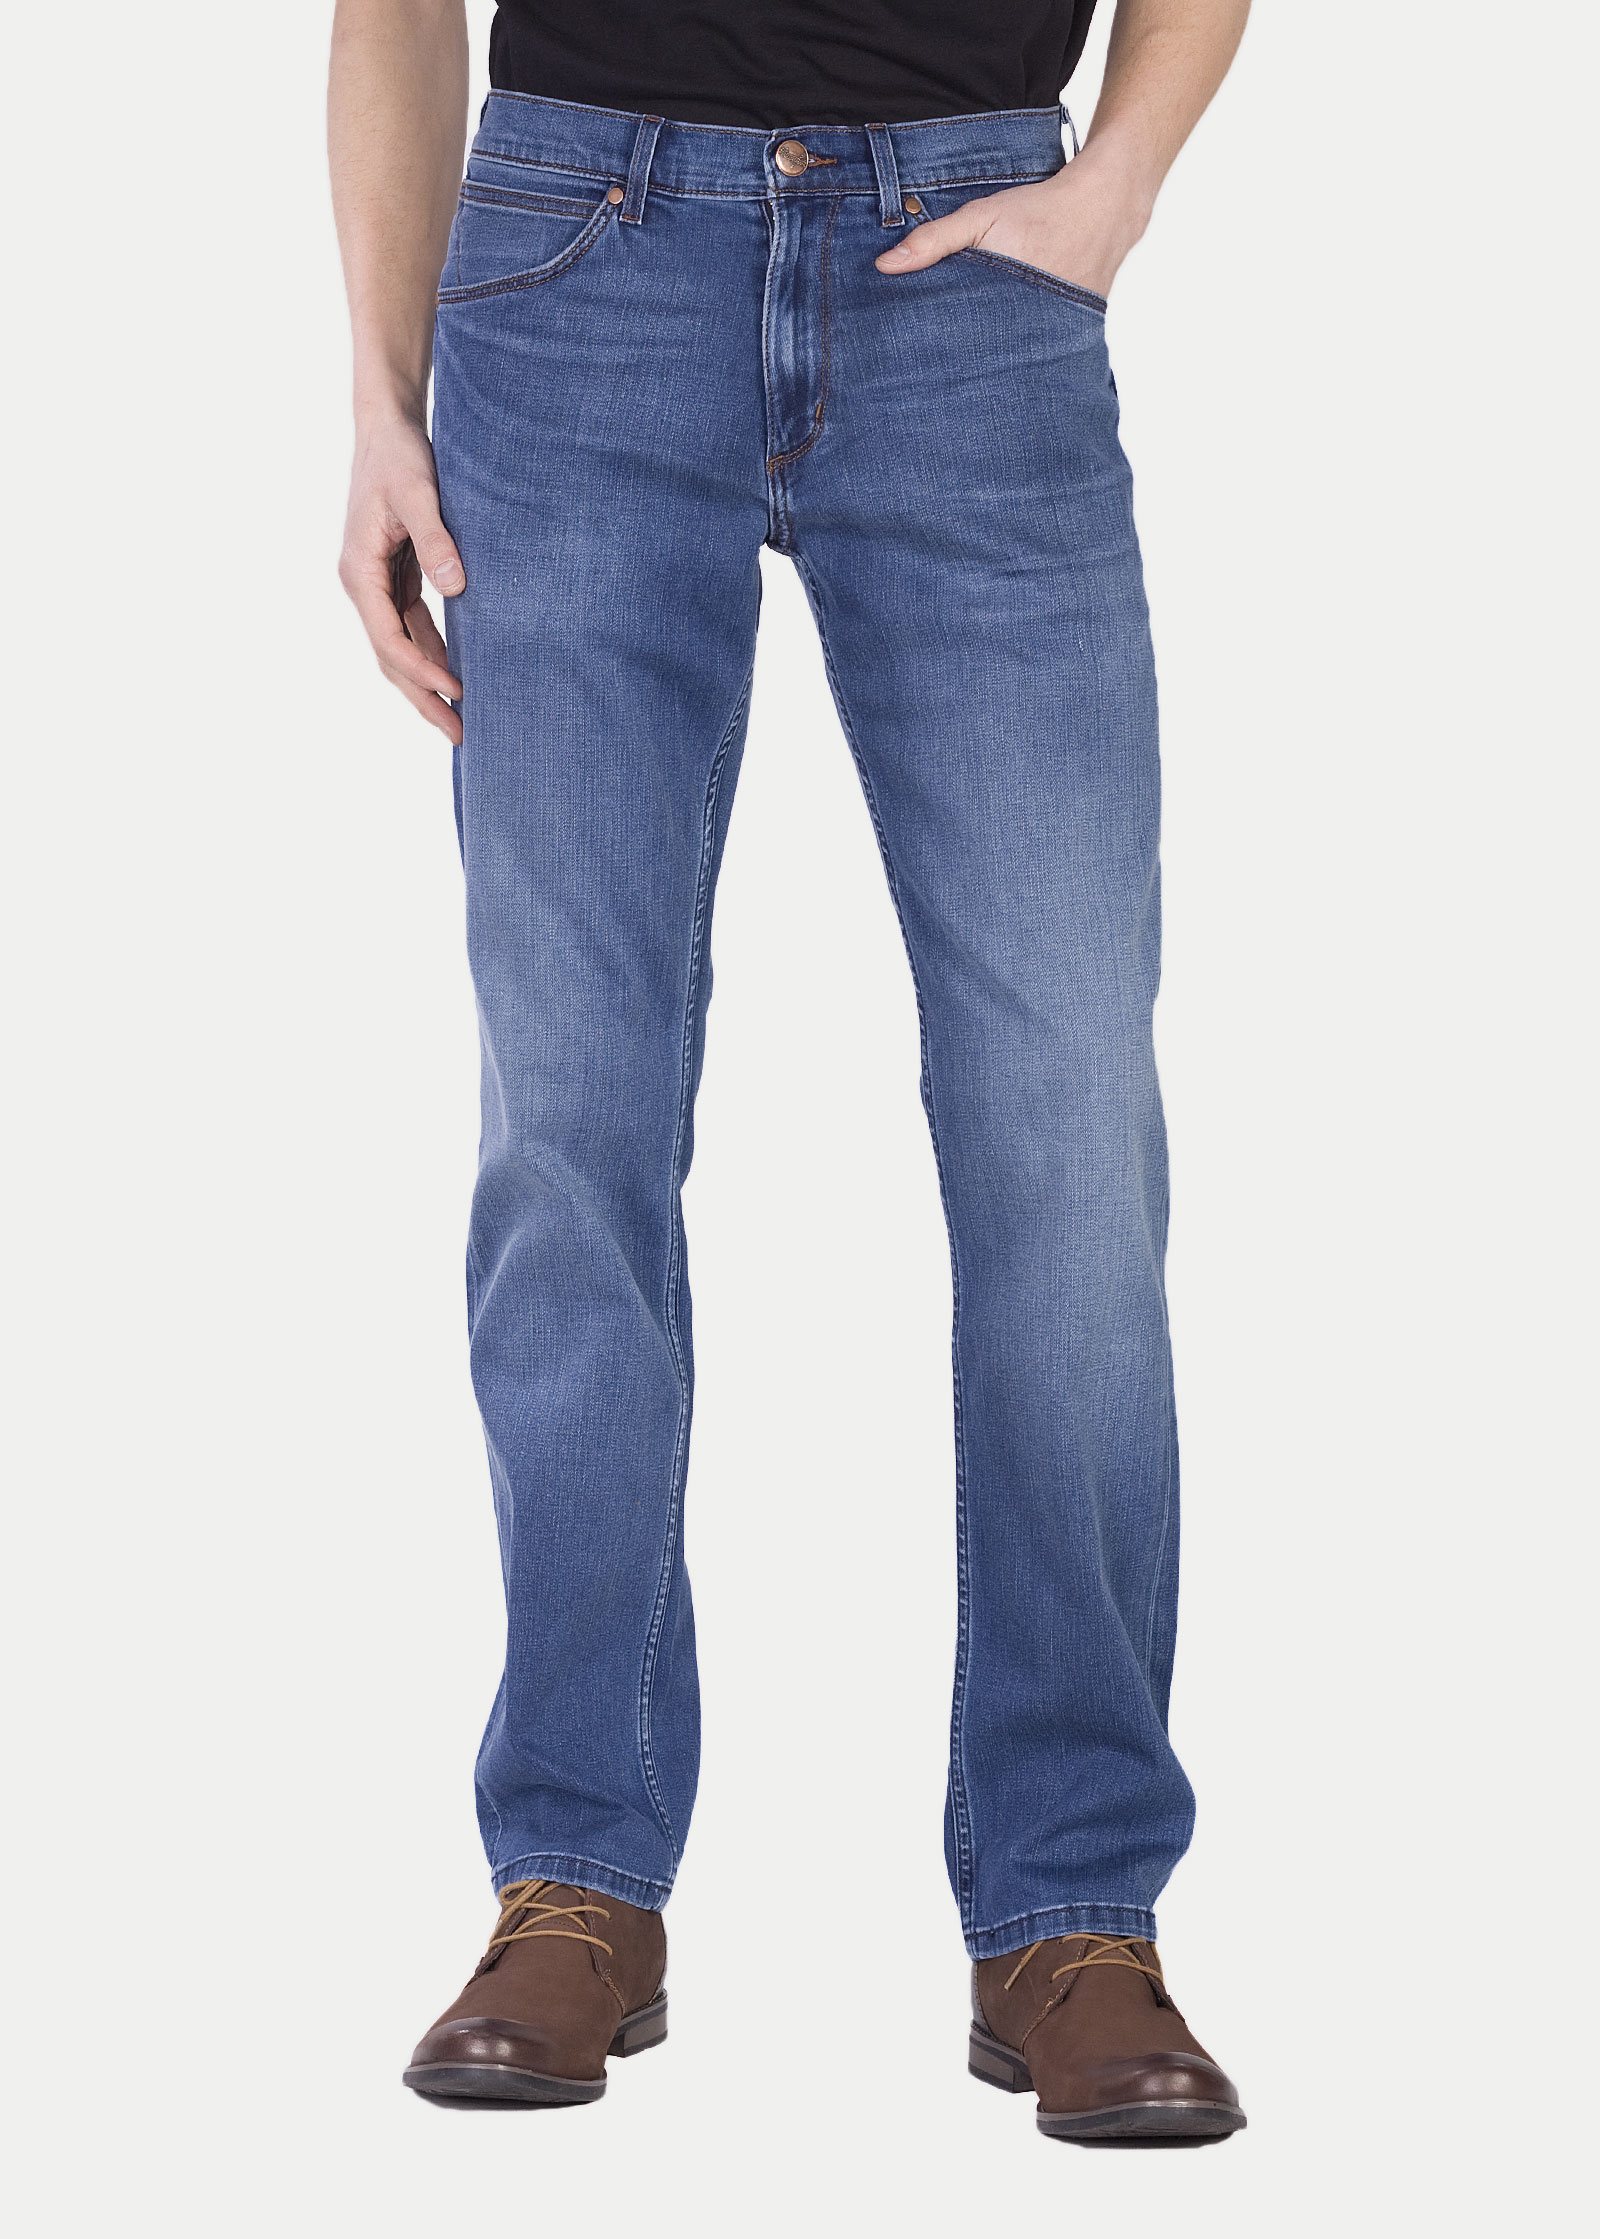 Джинсы мужские Wrangler Men Greensboro Jeans синие 42/34